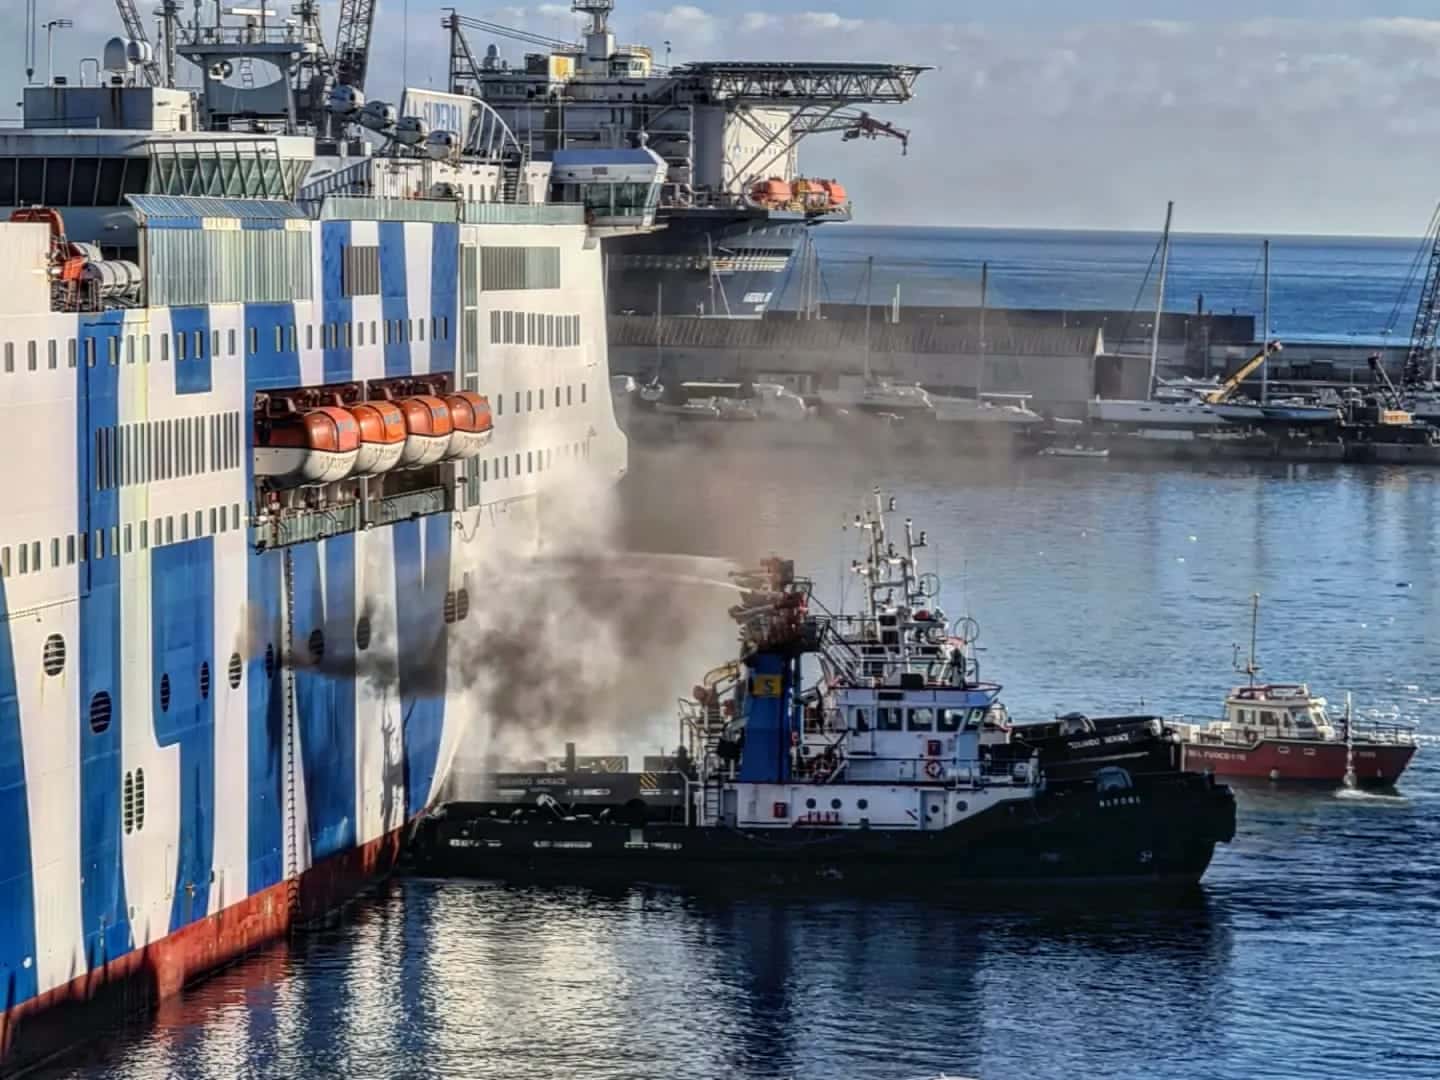 Rogo, fumo e paura sul traghetto “La Superba” al porto di Palermo: le precisazioni della Compagnia